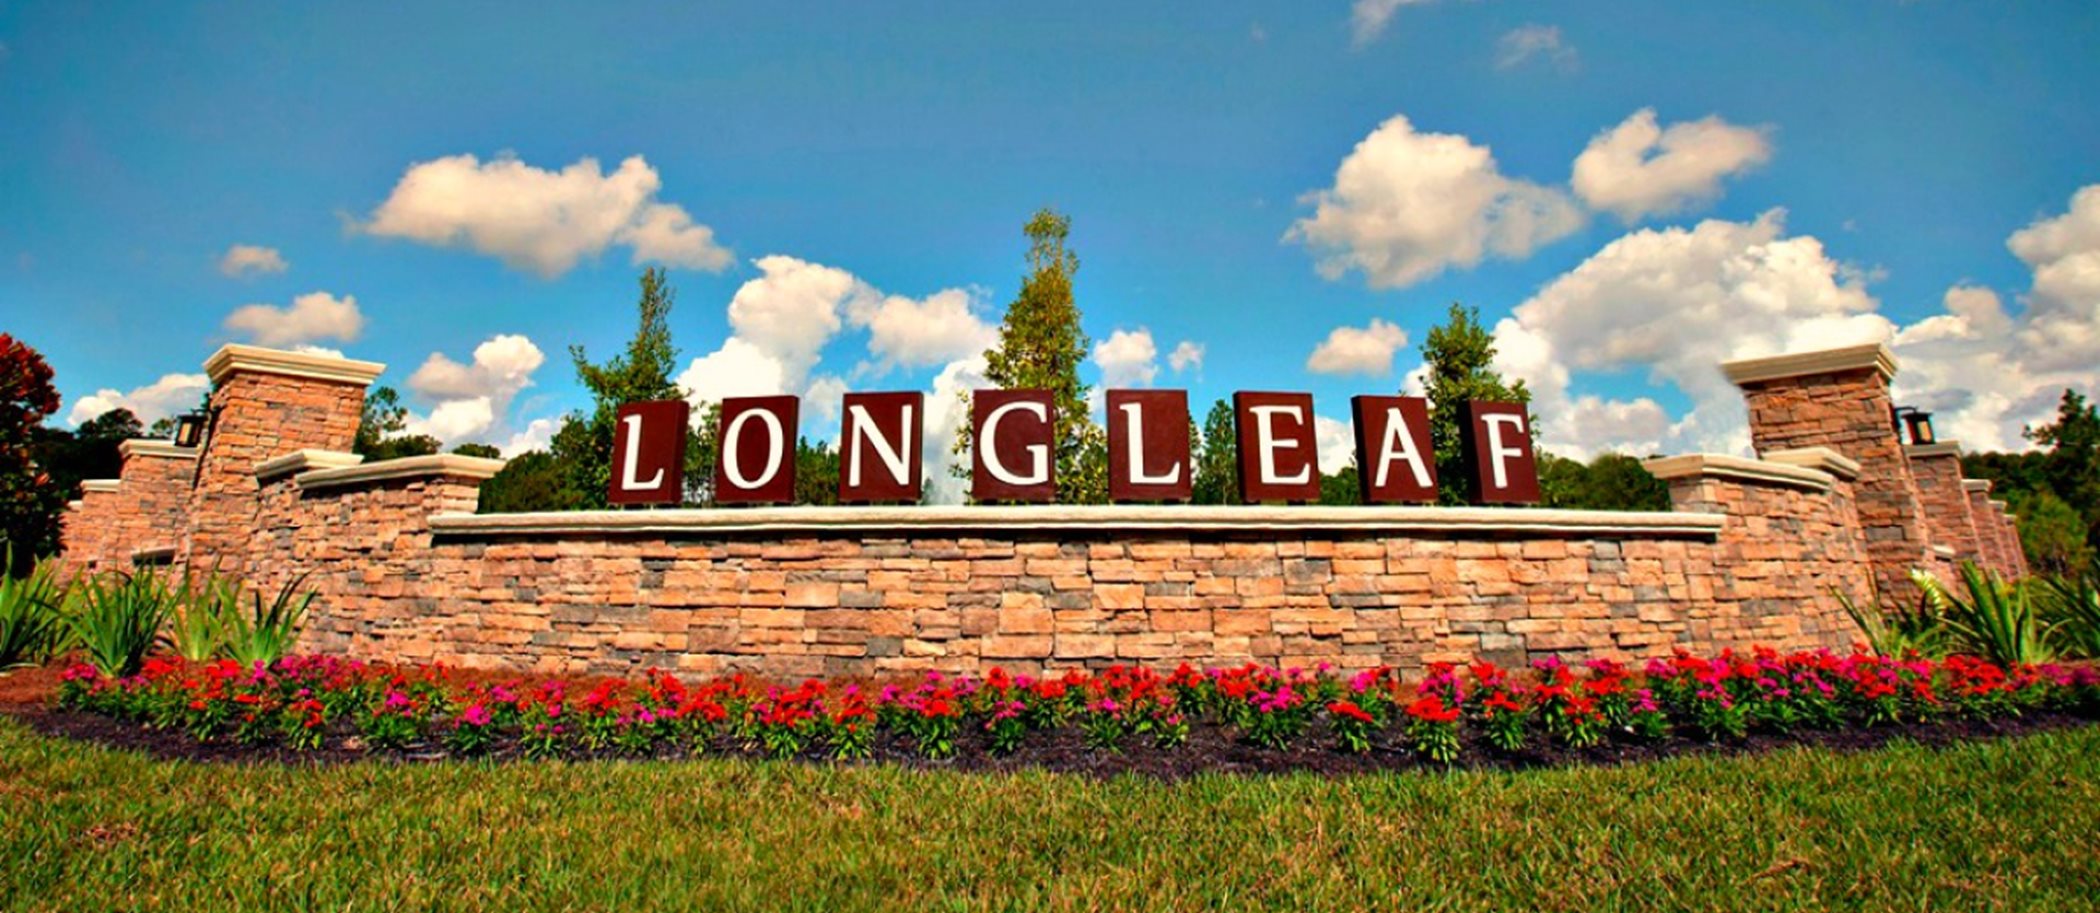 Longleaf Entrance